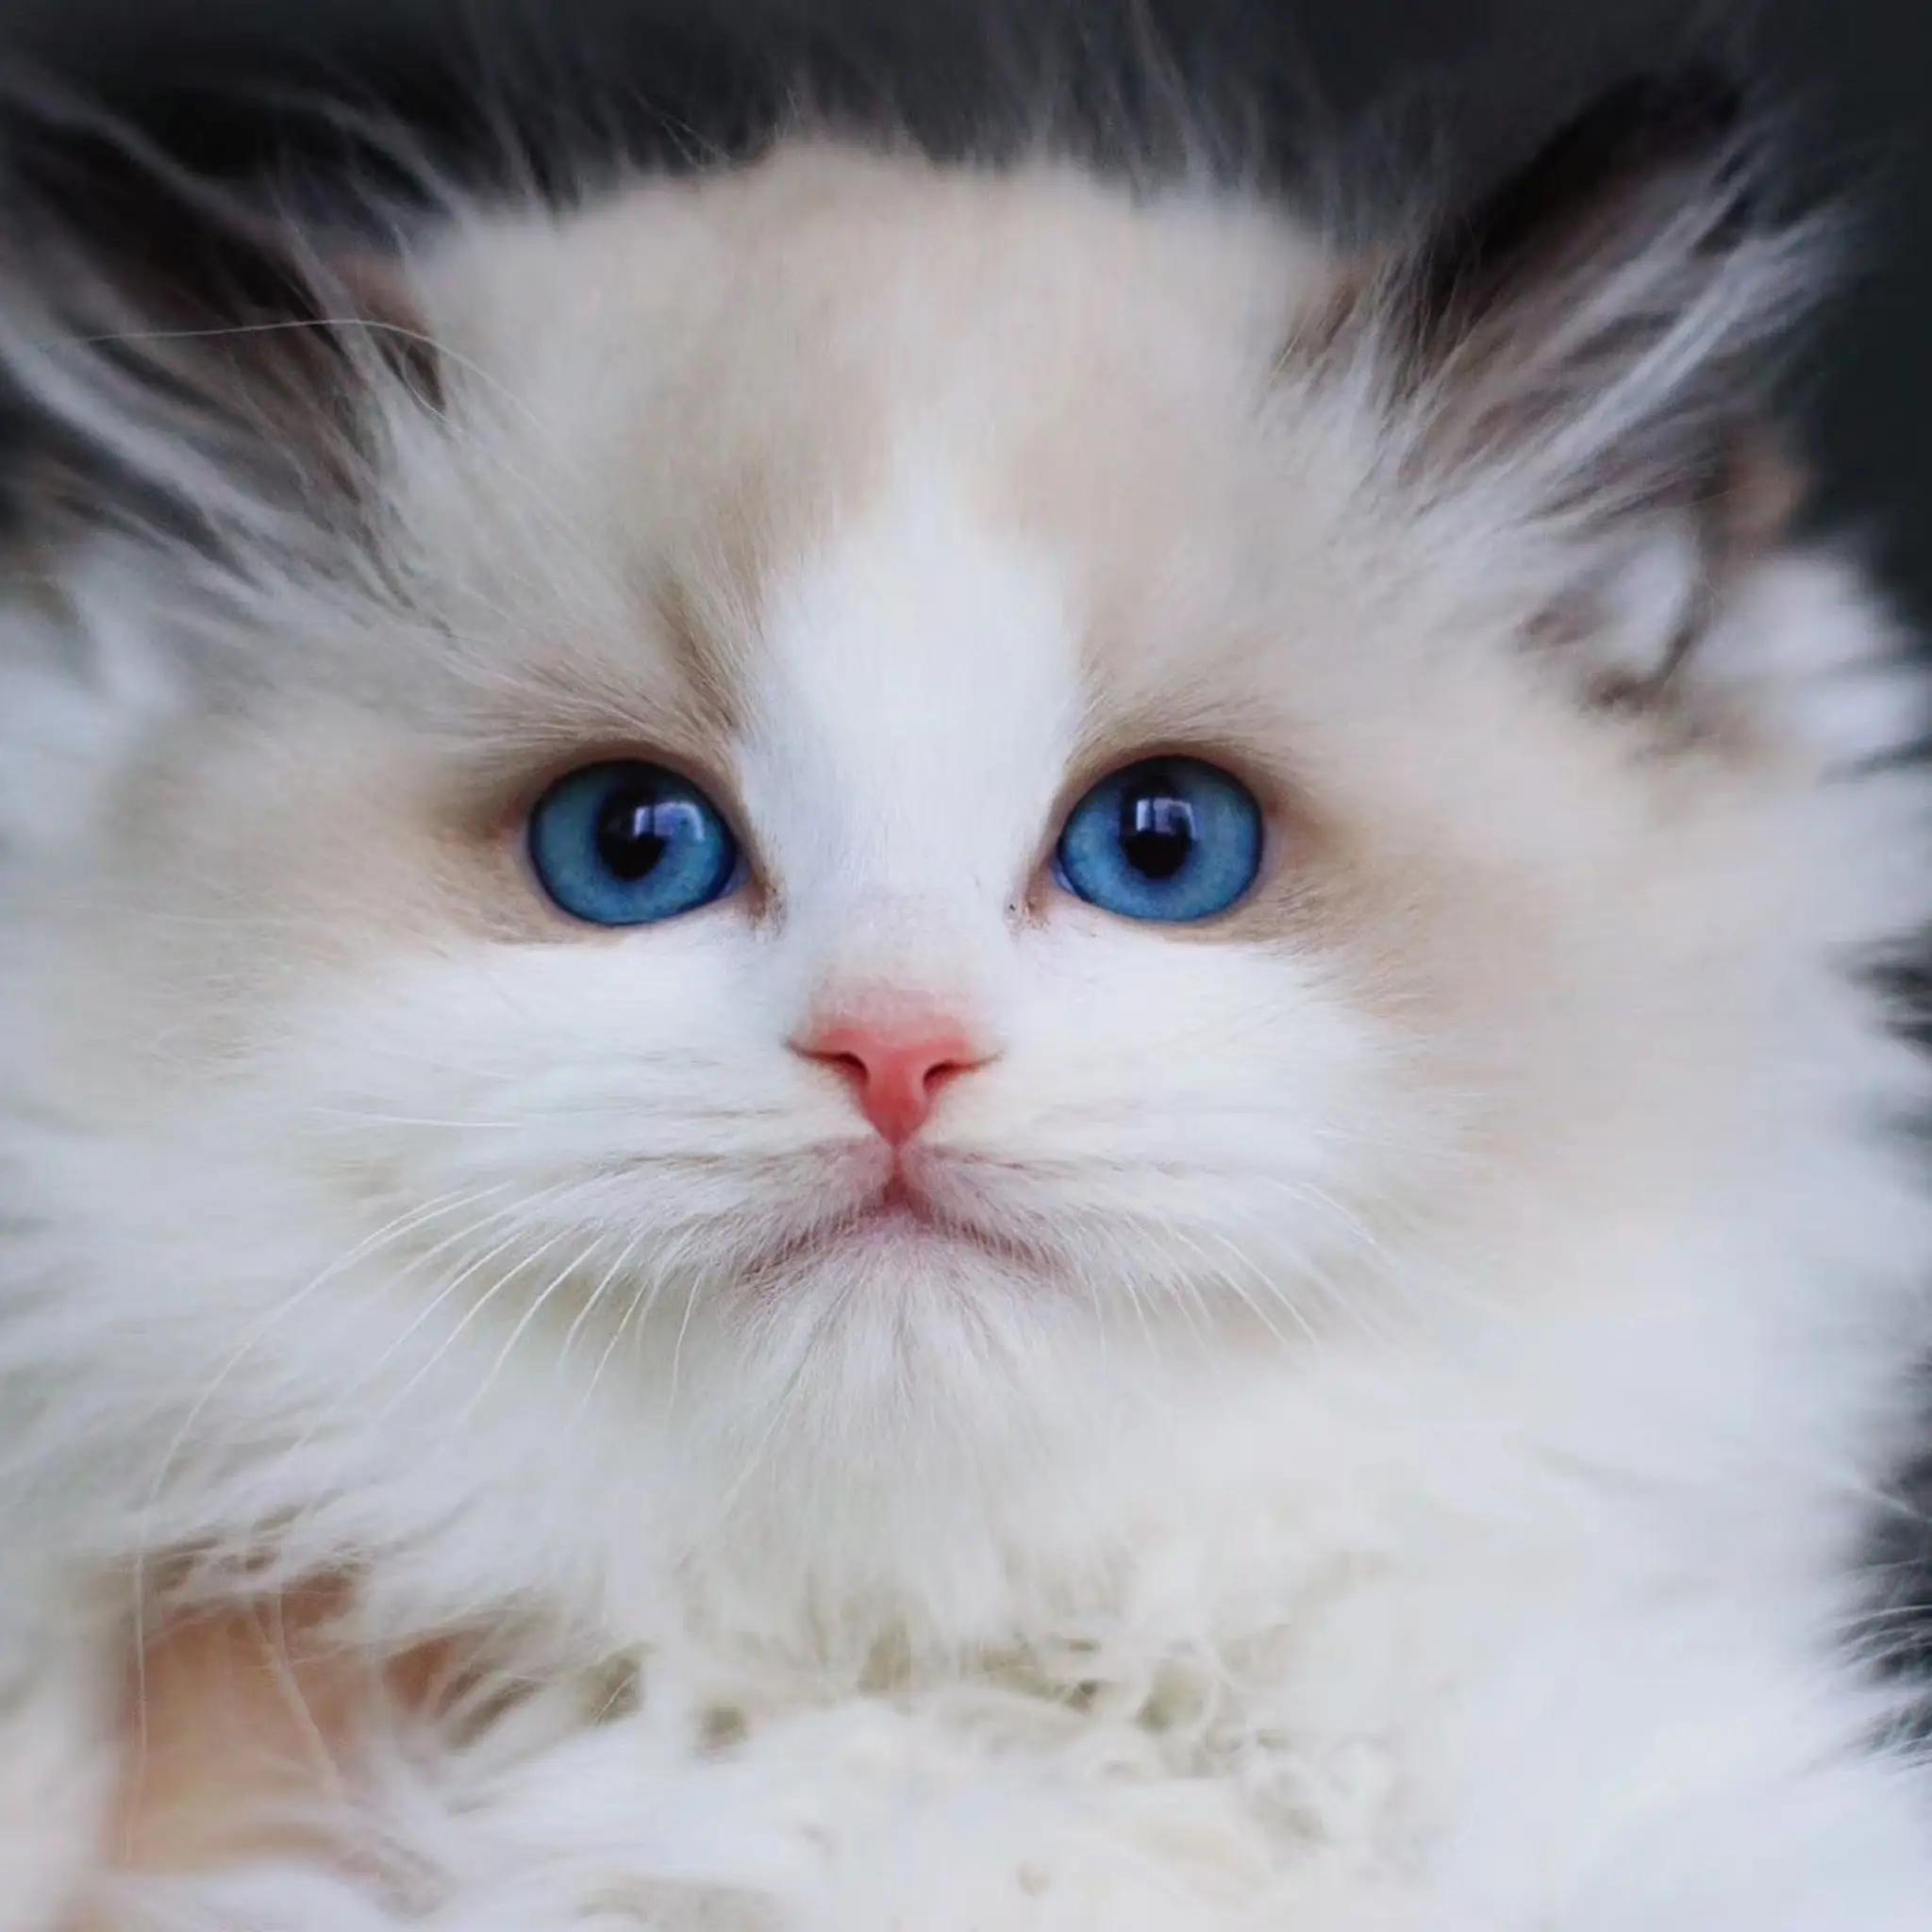 蓝双布偶猫图片大全,蓝双布偶猫高清壁纸 